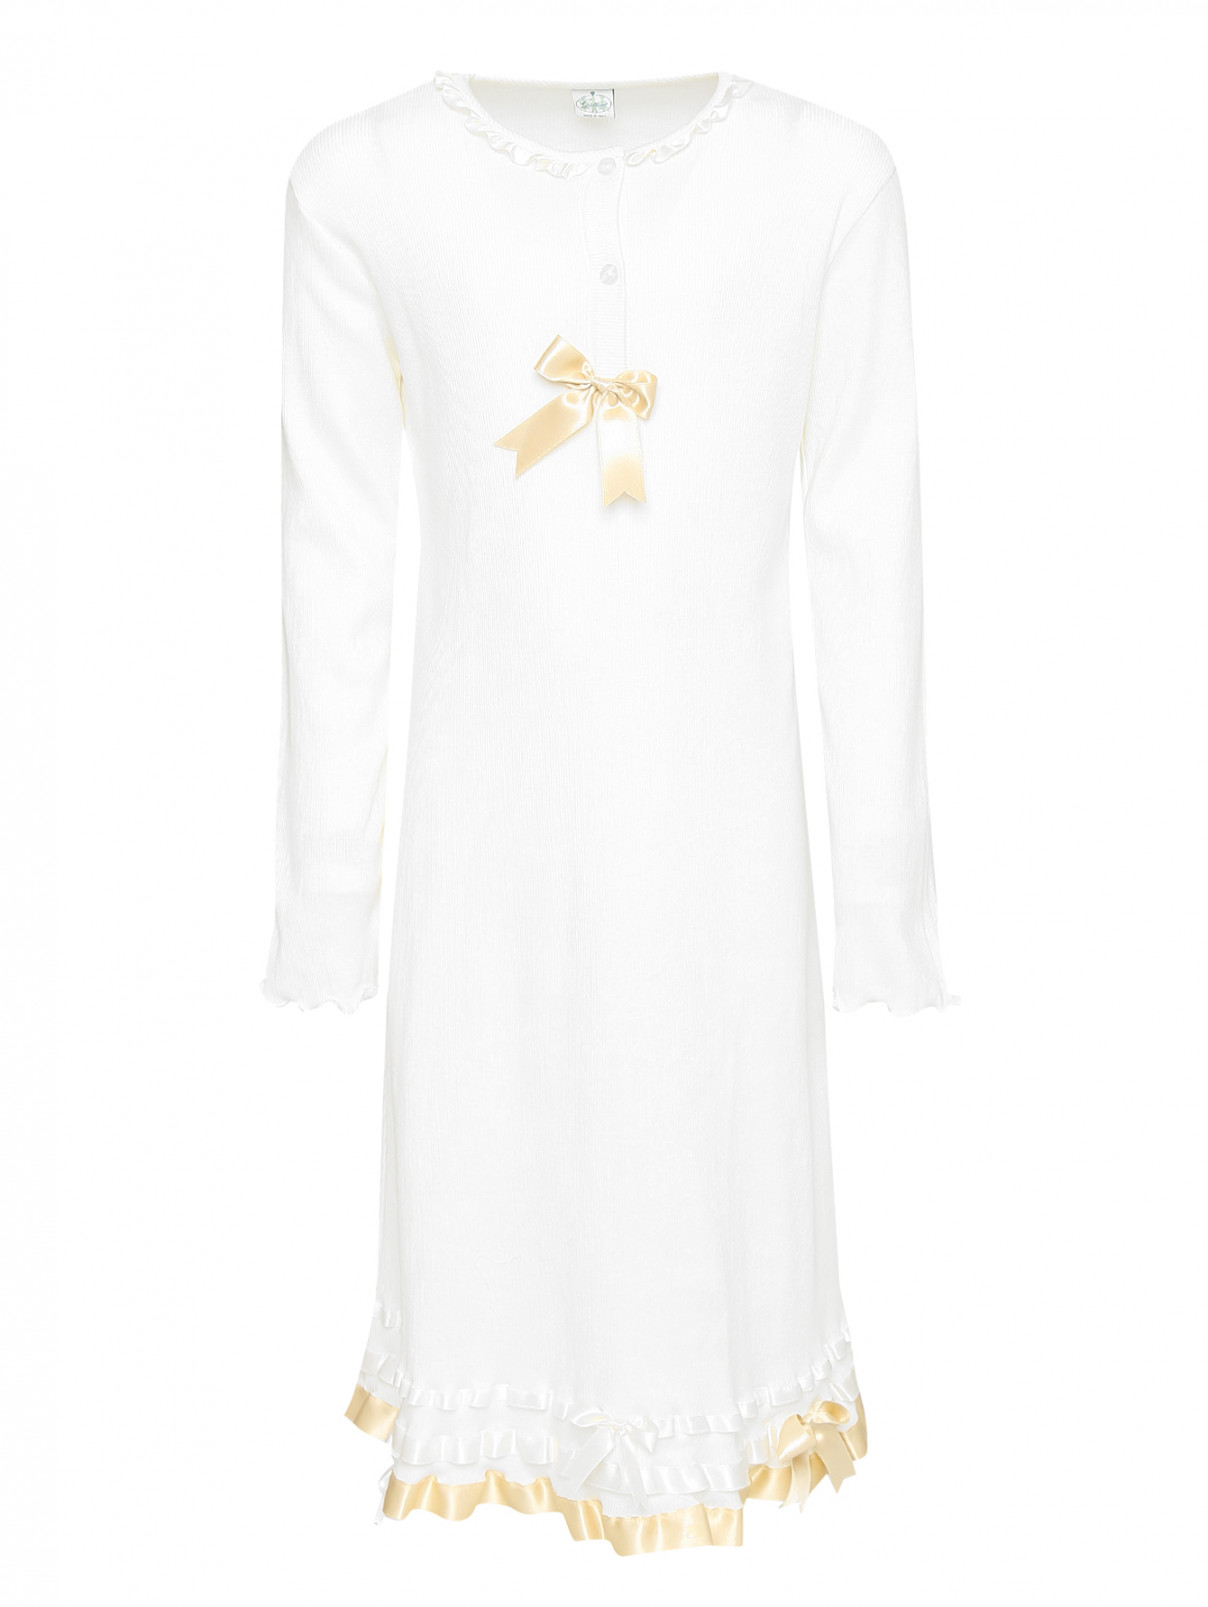 Ночная сорочка из хлопка с бантами Giottino  –  Общий вид  – Цвет:  Бежевый